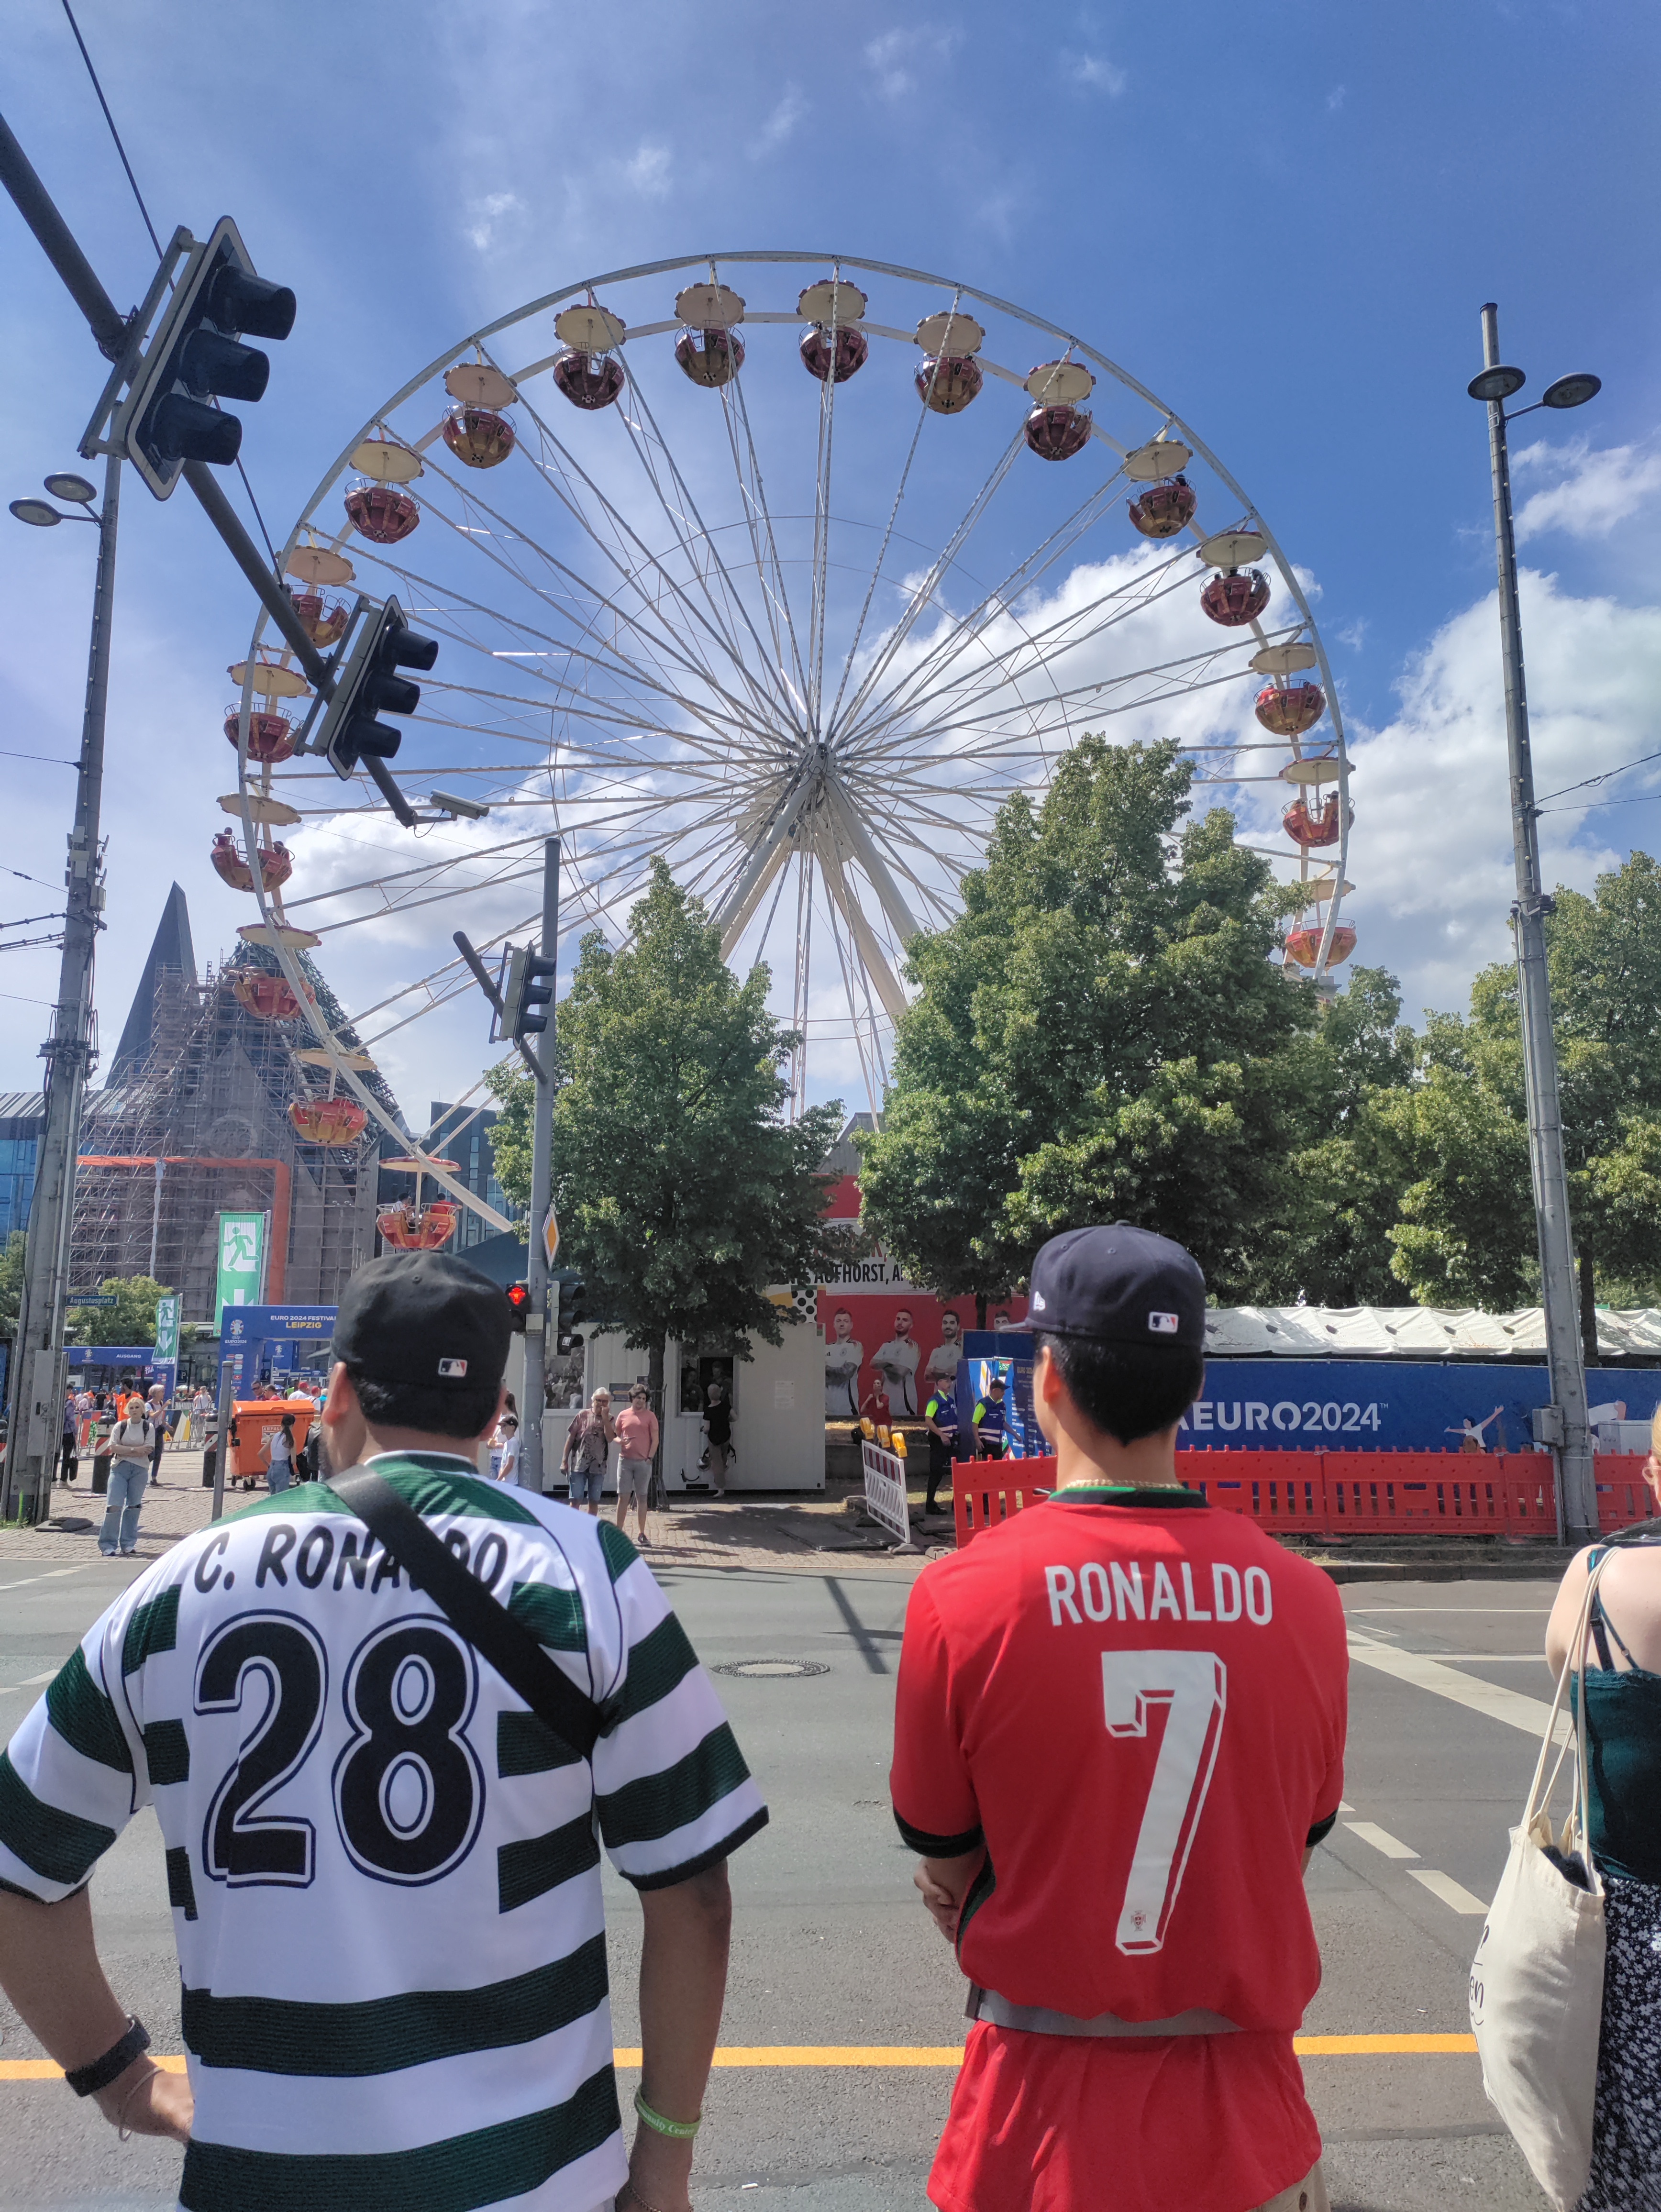 Las camisetas de Ronaldo de varias etapas de la célebre carrera del delantero eran vistas comunes en toda la ciudad de Leipzig.  Esta imagen muestra la entrada a Augustusplatz, el lugar de interés de la Euro Fan Zone.  (Rishabh Gupta)